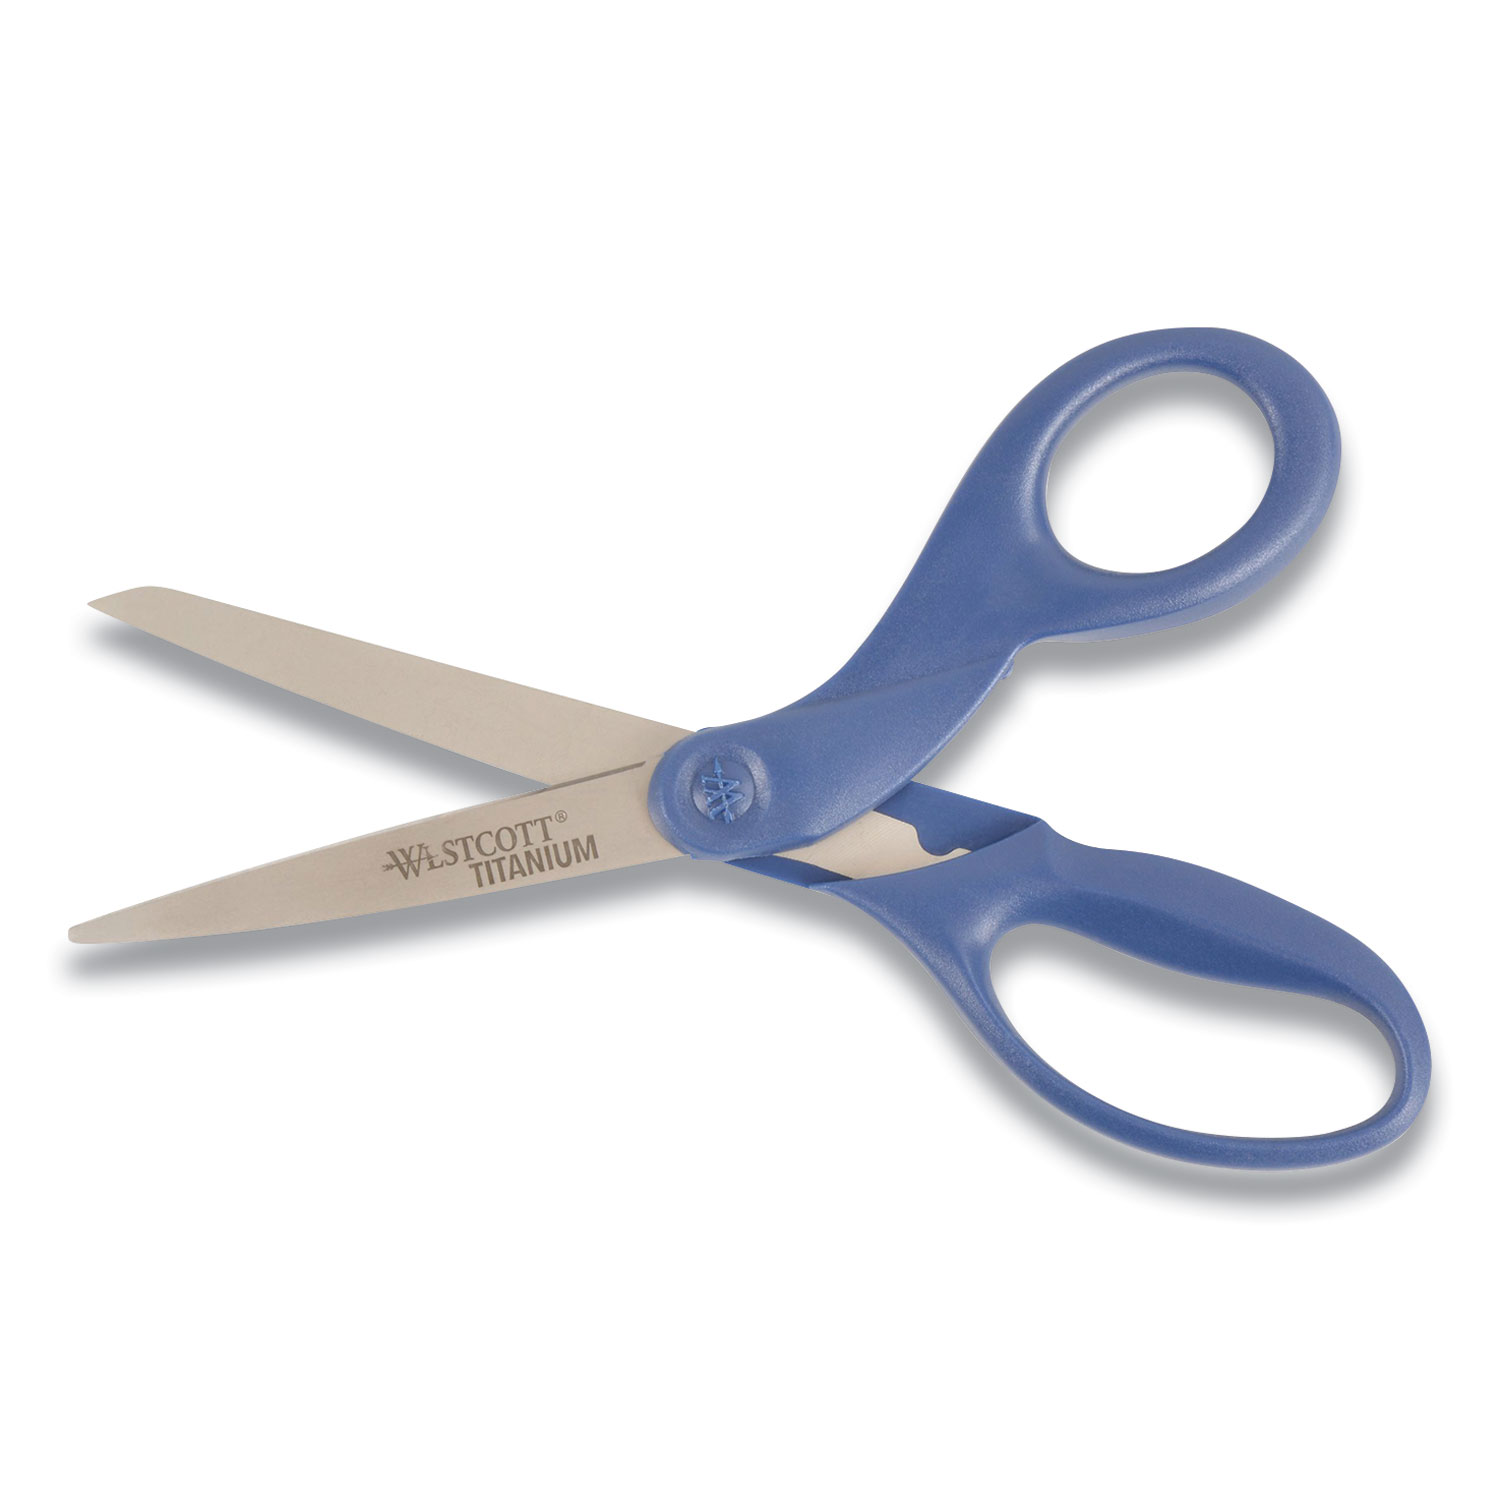 Westcott® Titanium Bonded Micro Tip Scissors